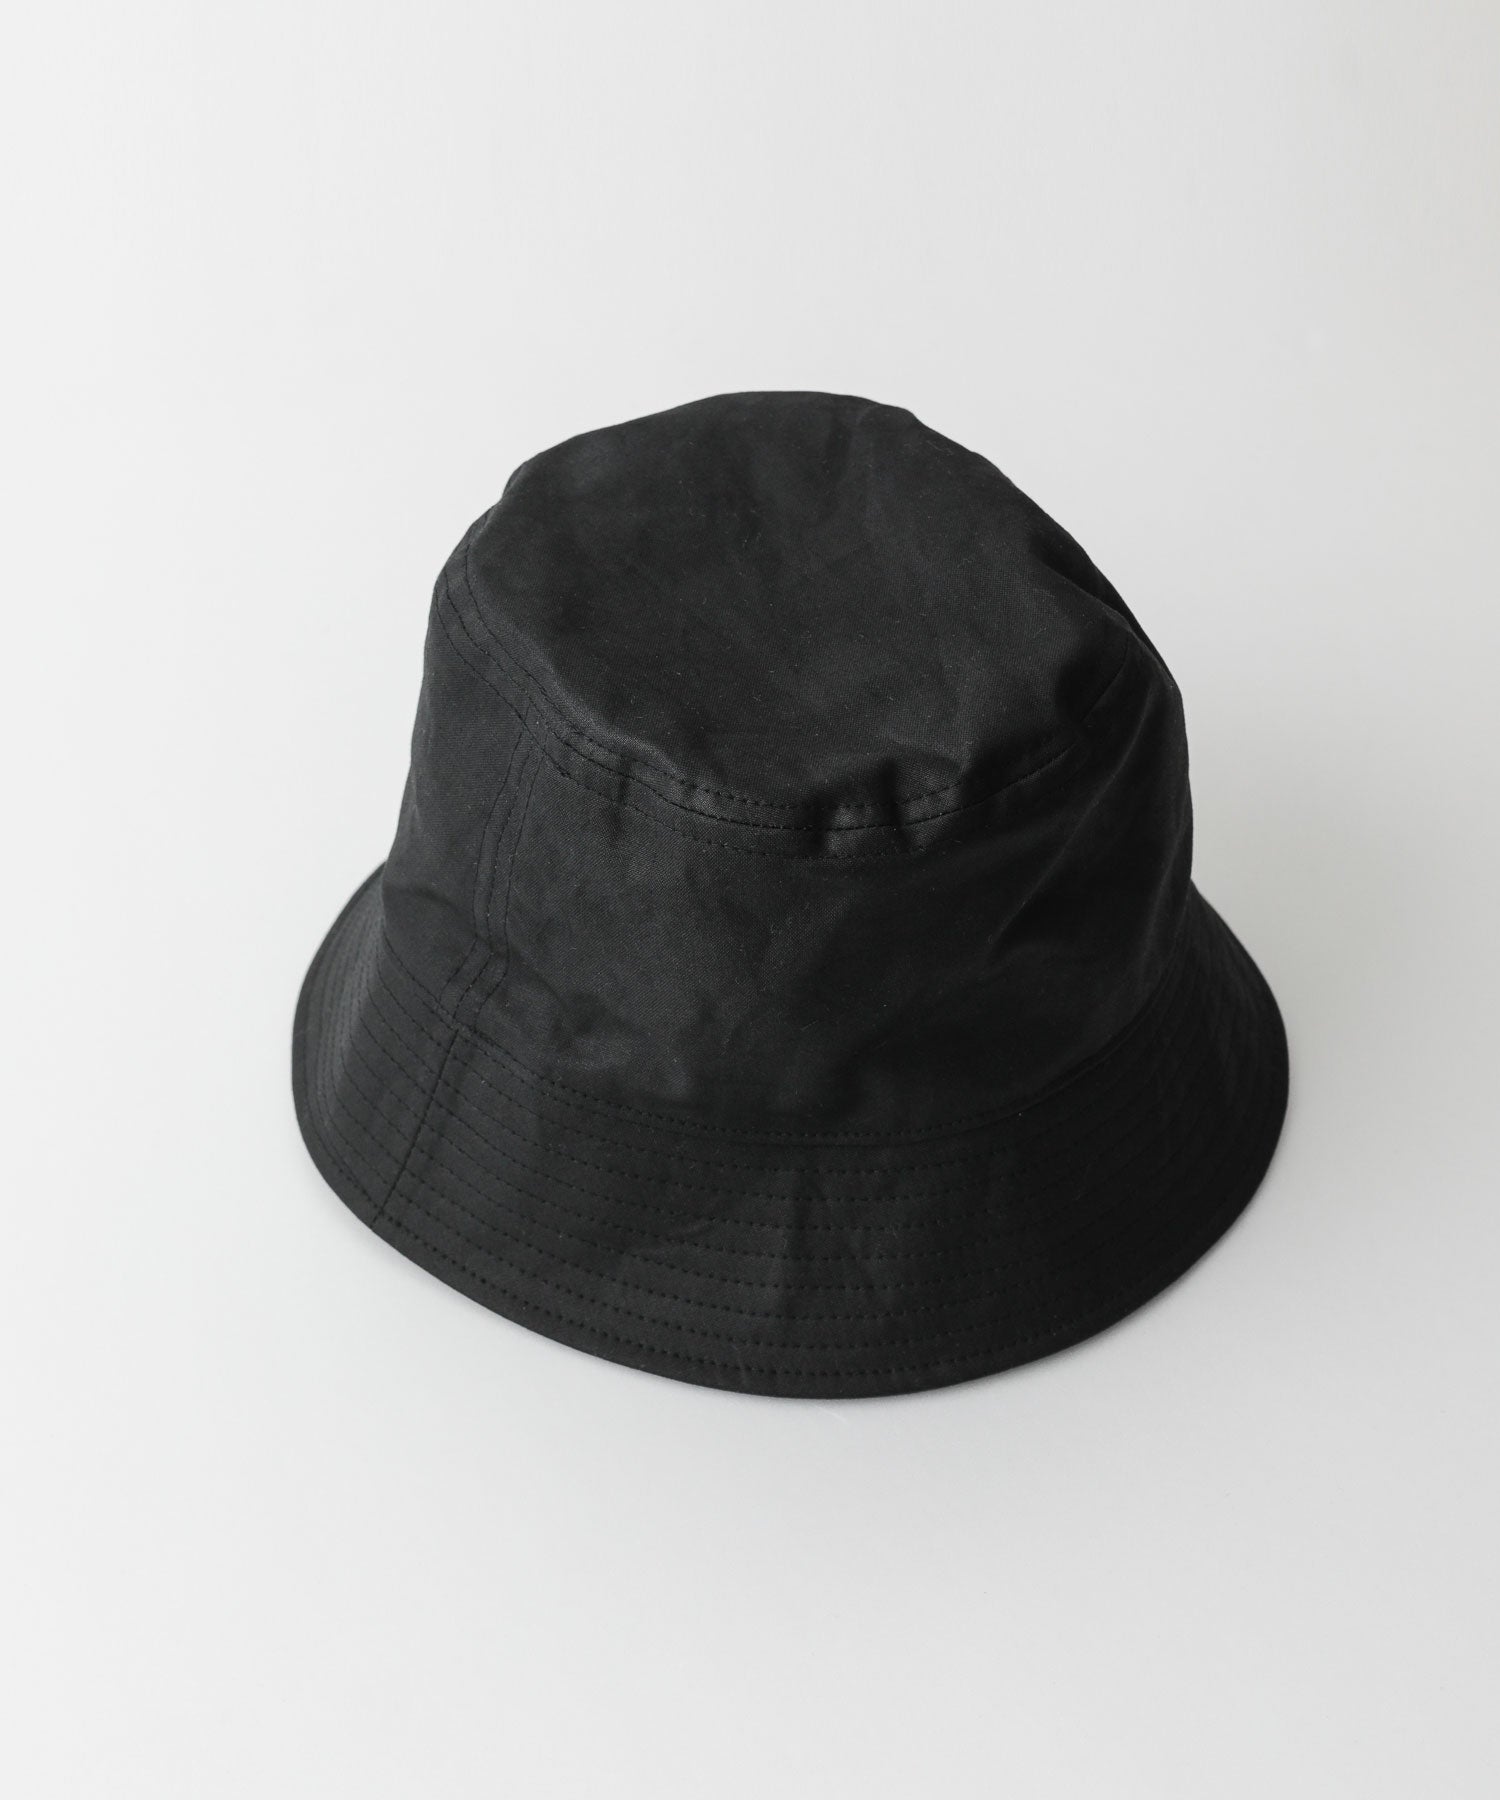 INTÉRIM(インテリム)のバケットハット UK OILED CLOTH BUCKET HAT - BLACK